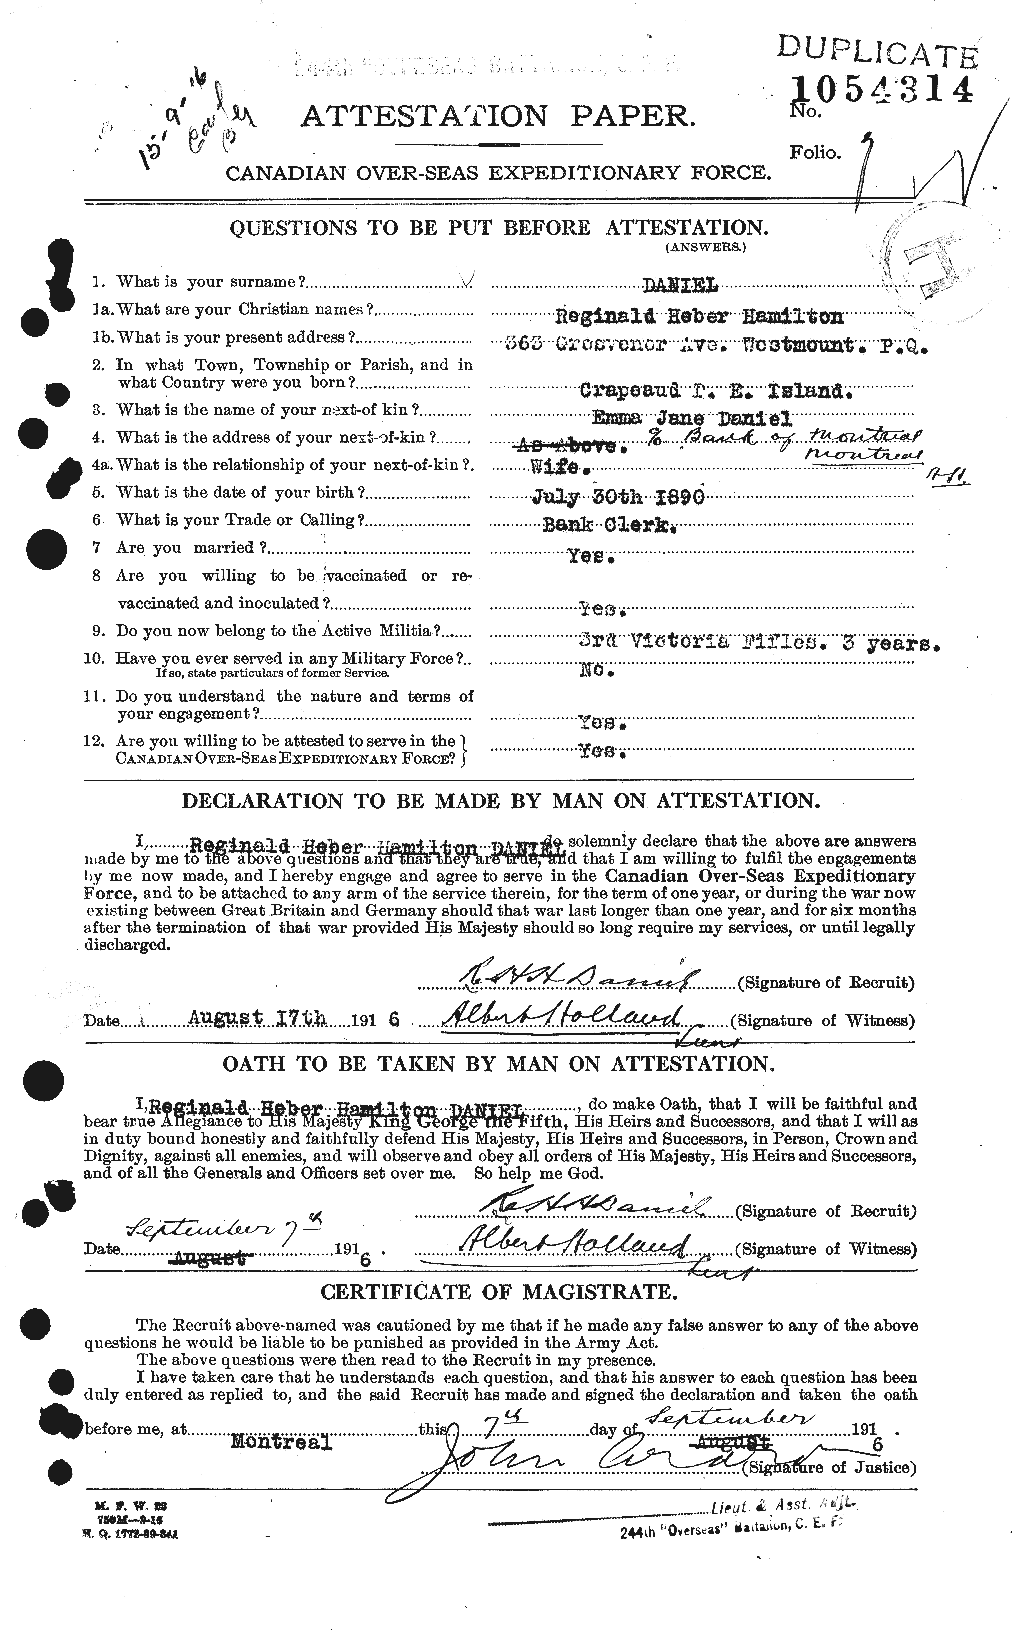 Dossiers du Personnel de la Première Guerre mondiale - CEC 278048a